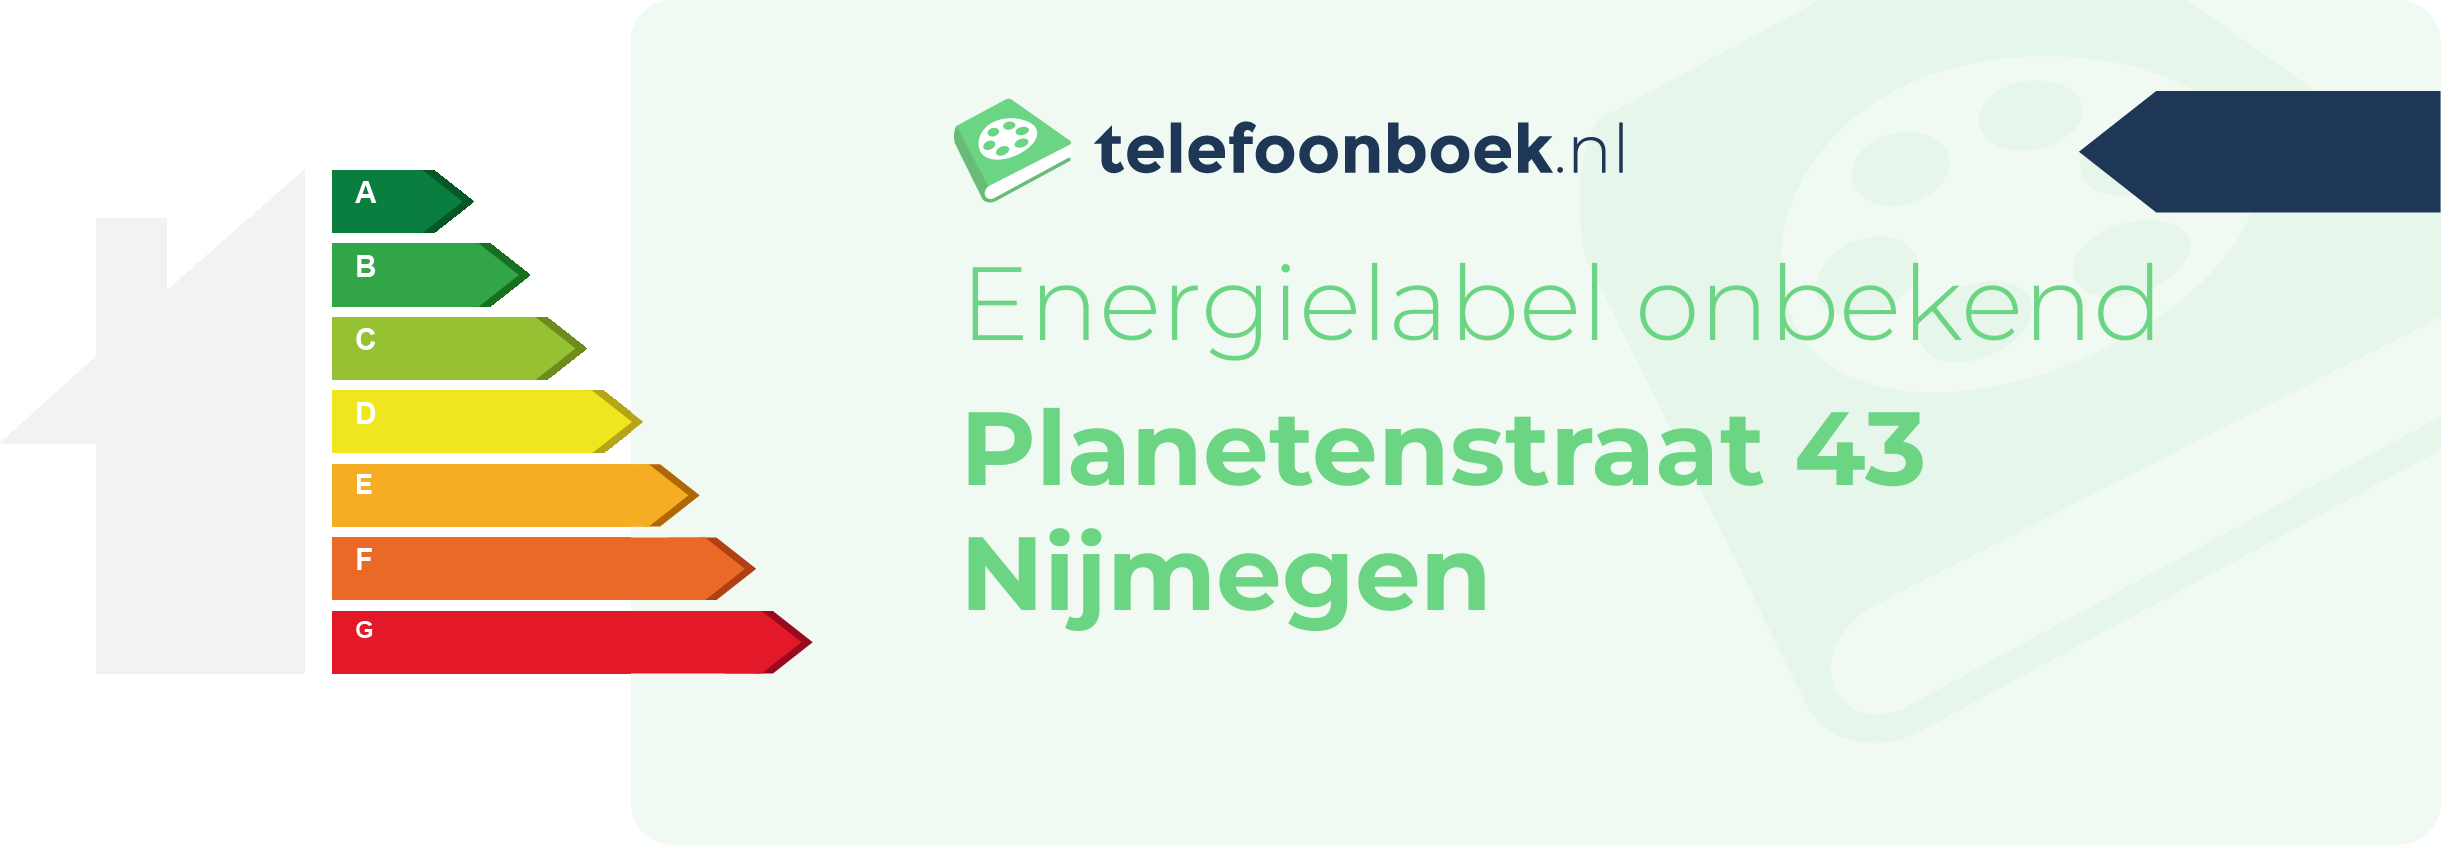 Energielabel Planetenstraat 43 Nijmegen